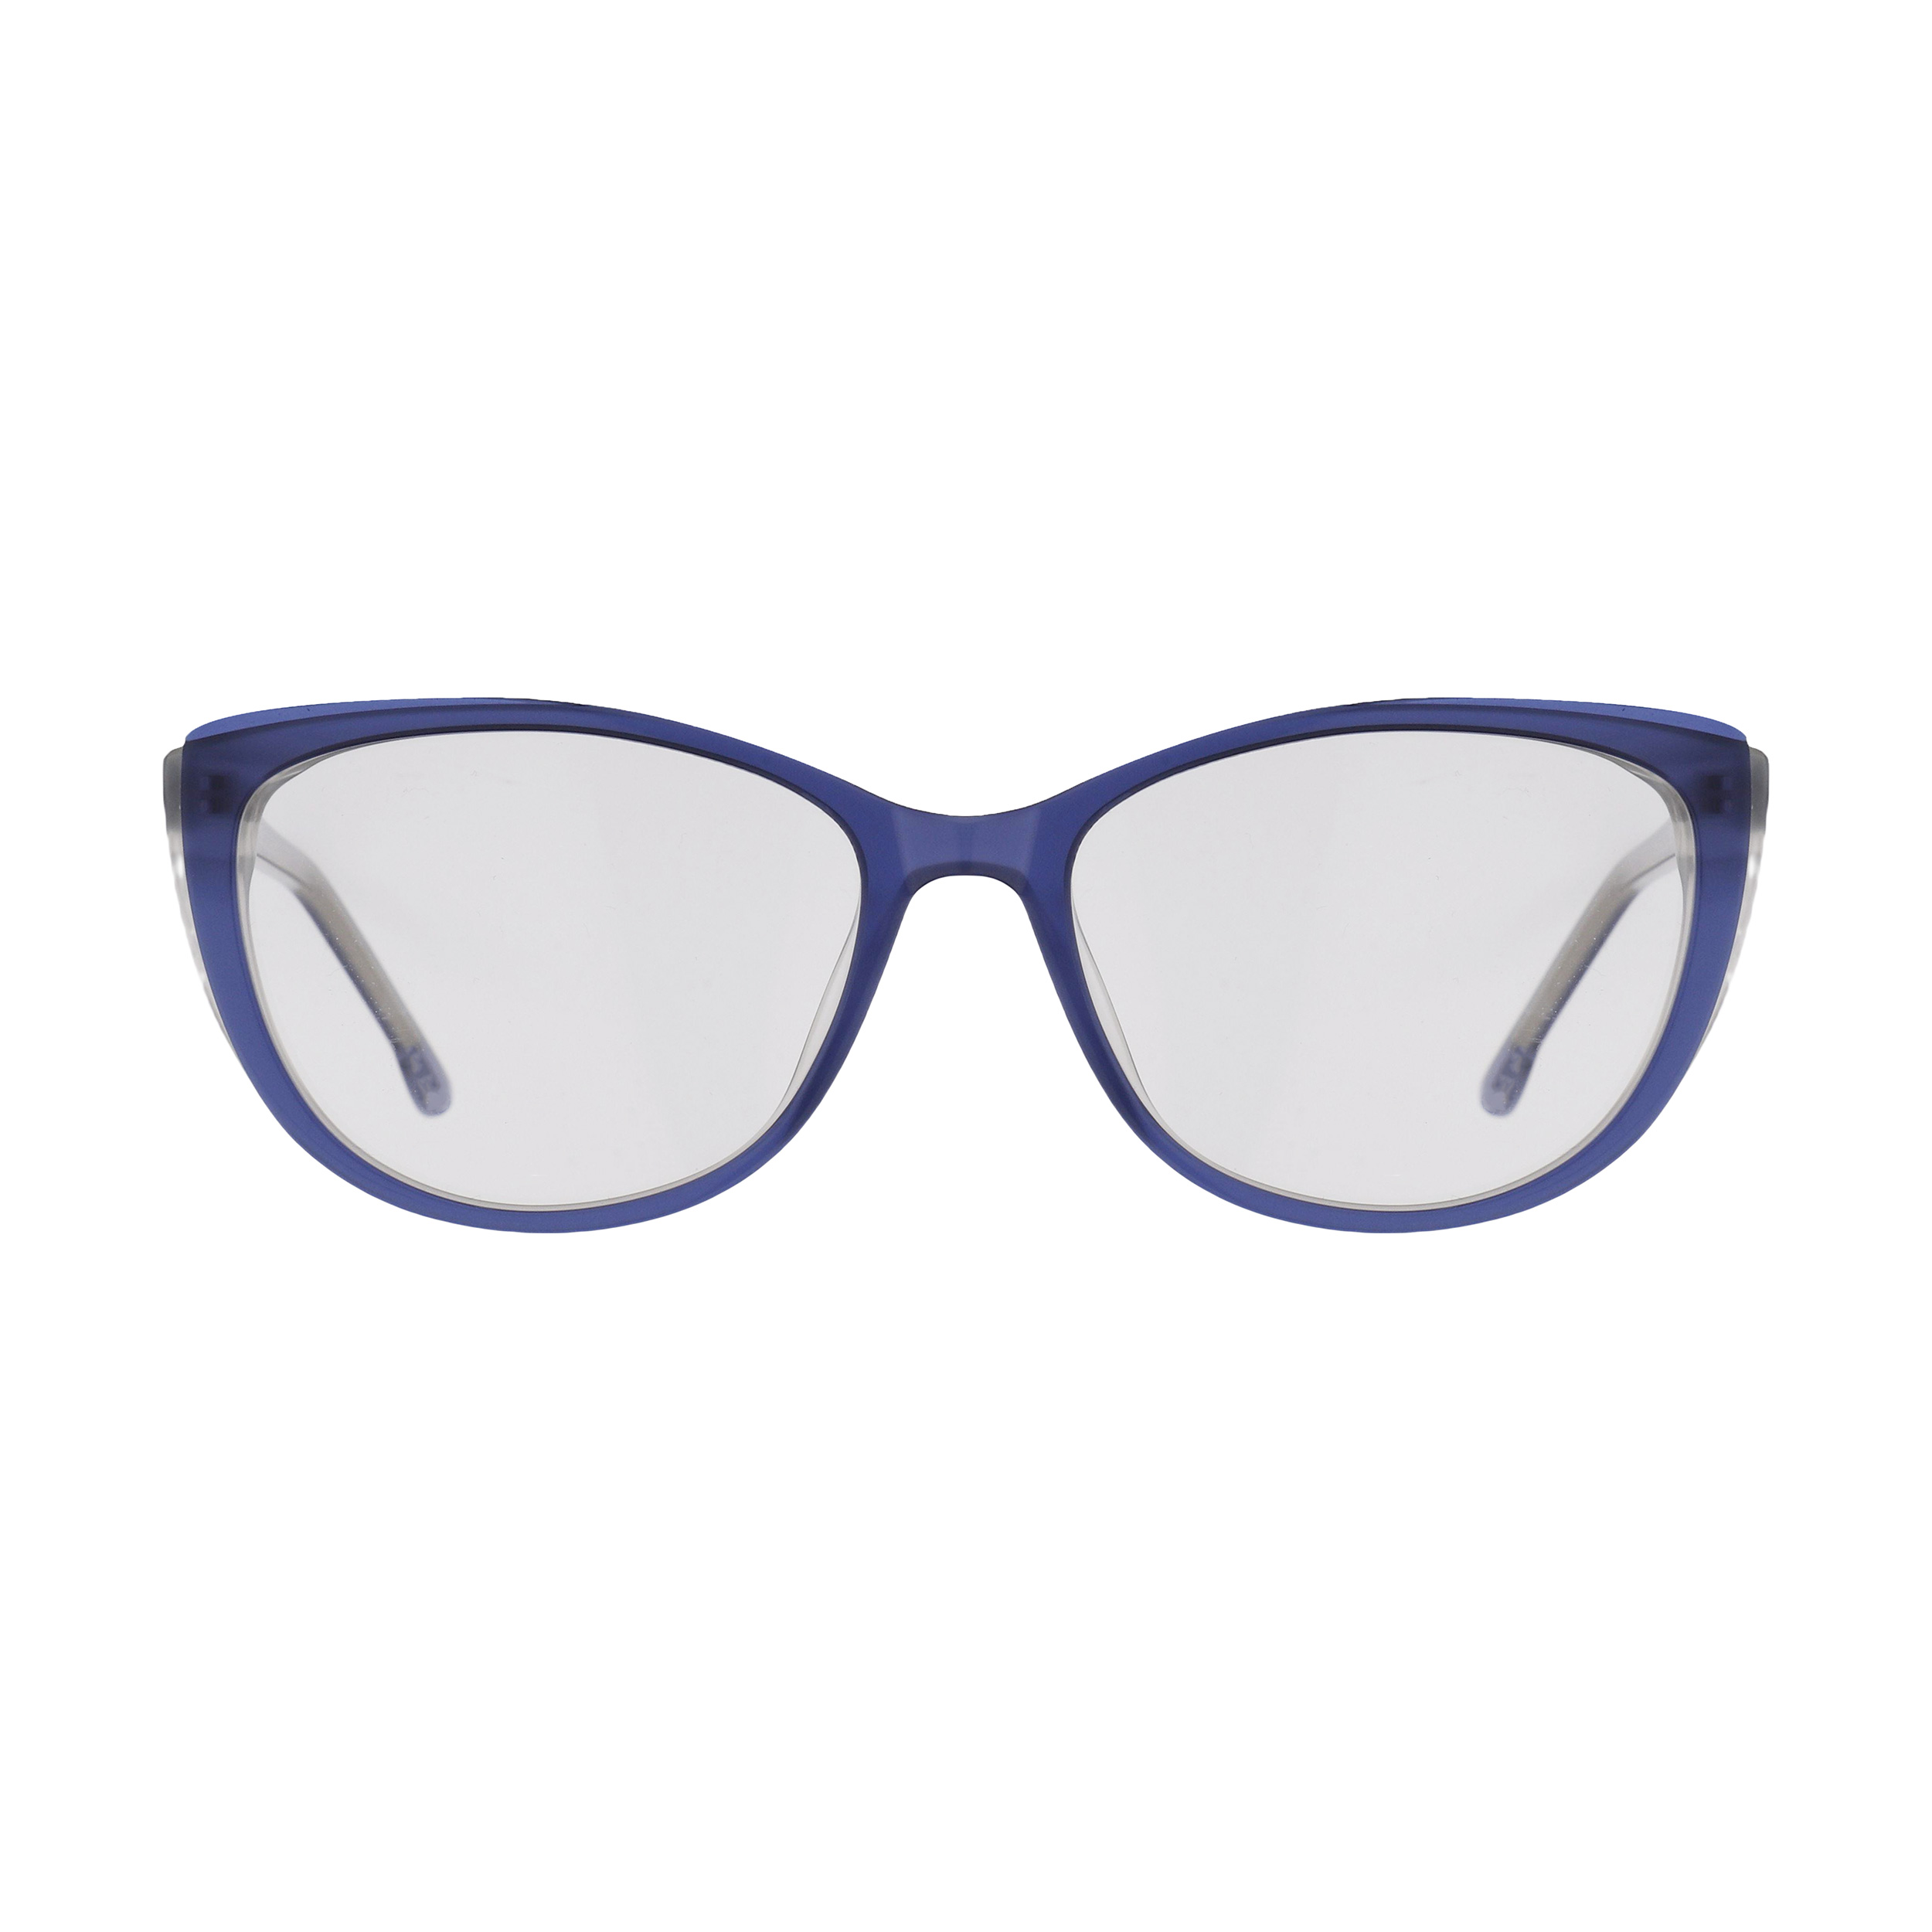 فریم عینک طبی زنانه تام تیلور مدل 60526-589